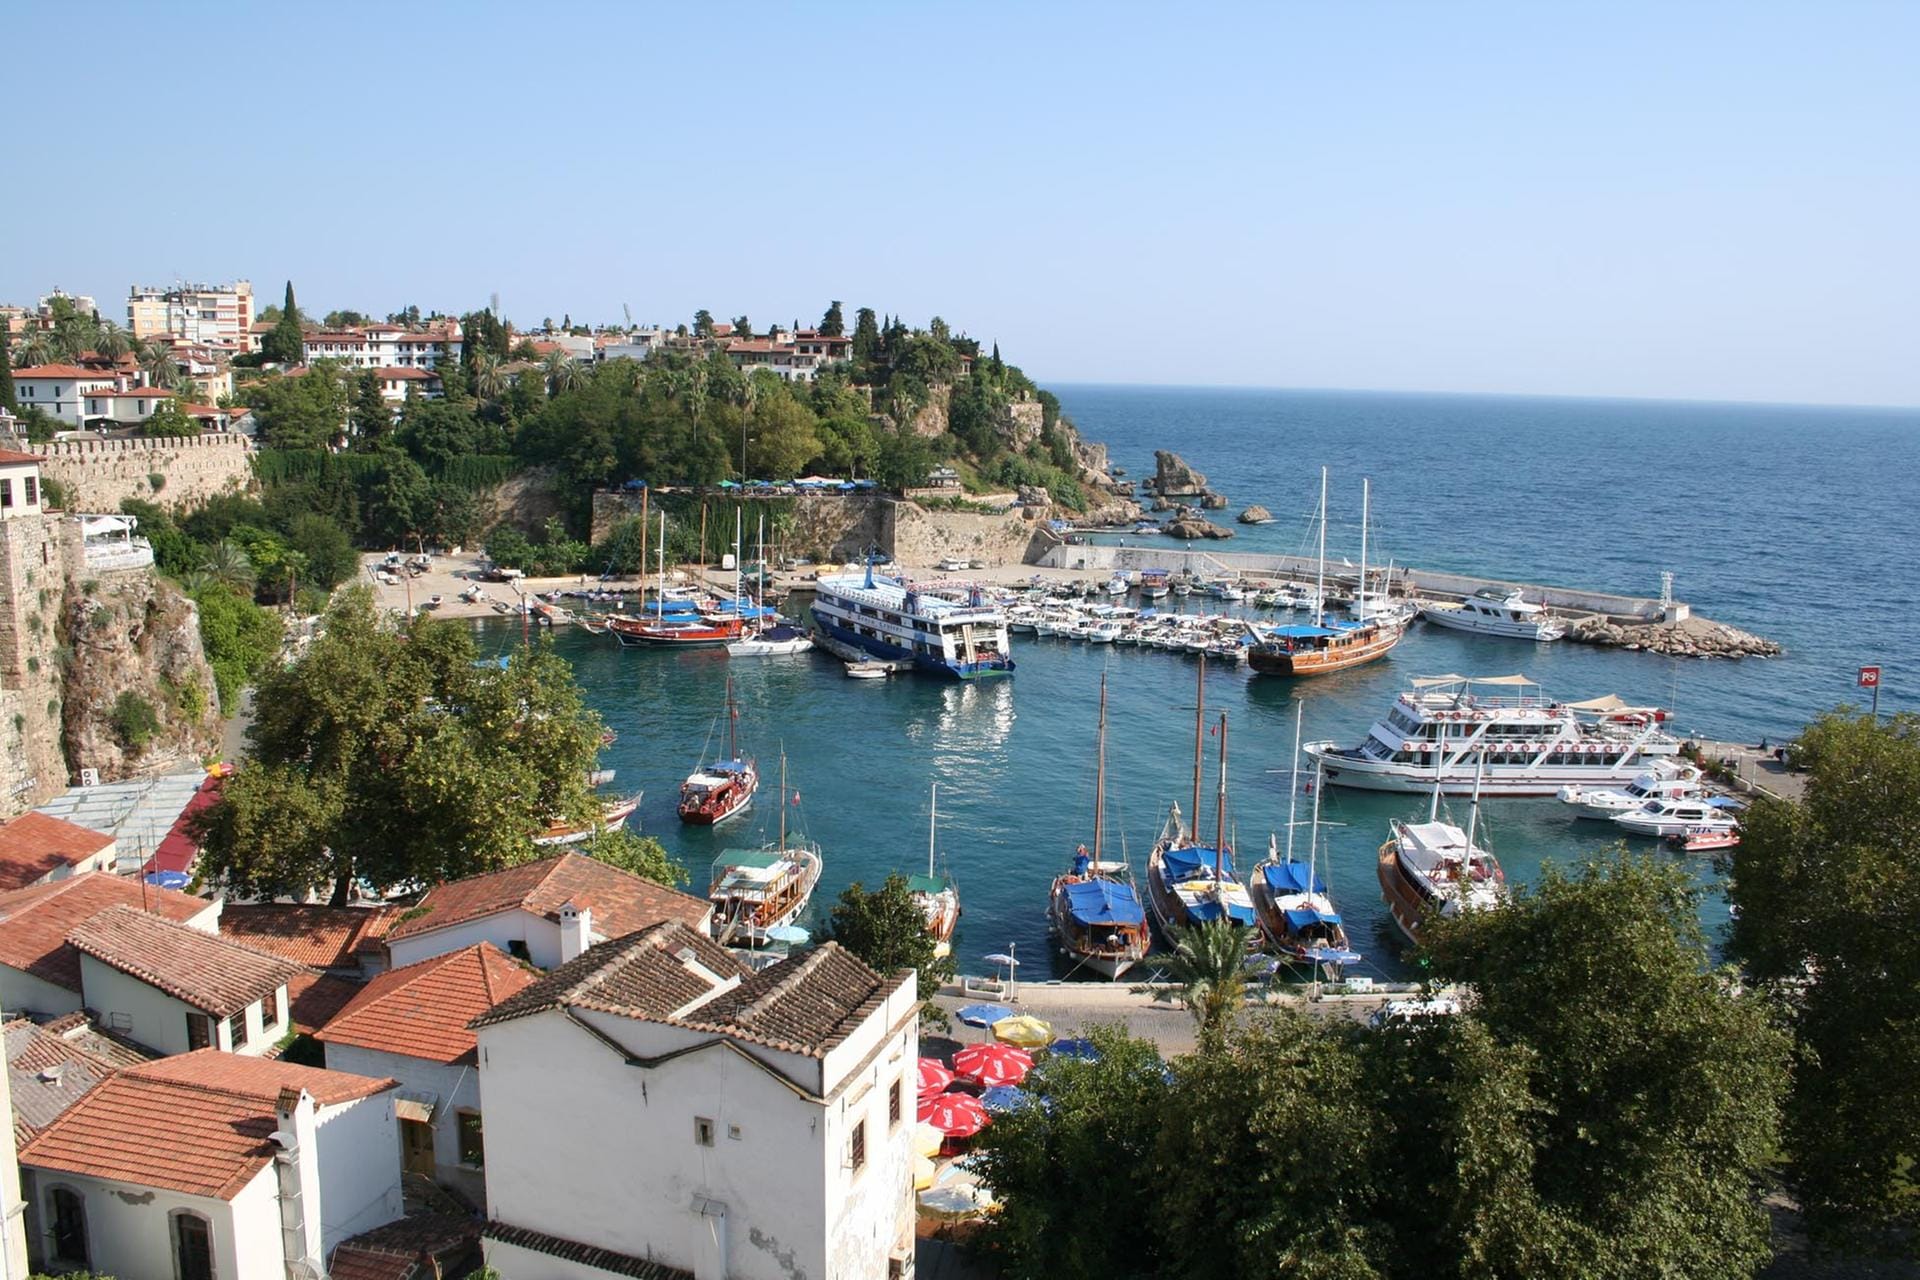 Reiseziele in die Türkei, wie Antalya, ist etwas für Familien oder junge Erwachsene mit geringerem Einkommen